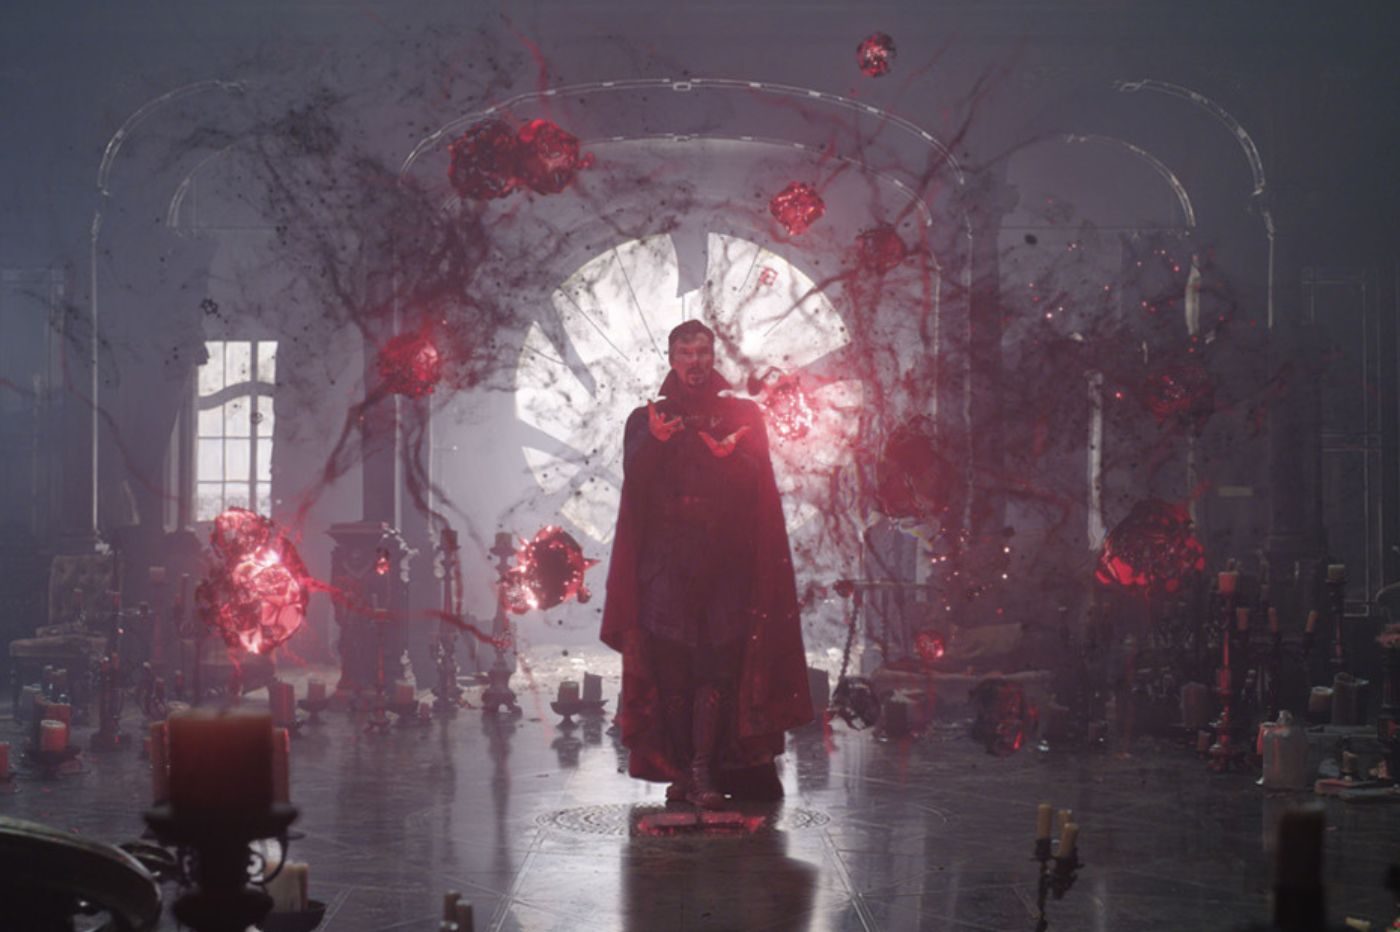 Doctor Strange et le multivers de la folie